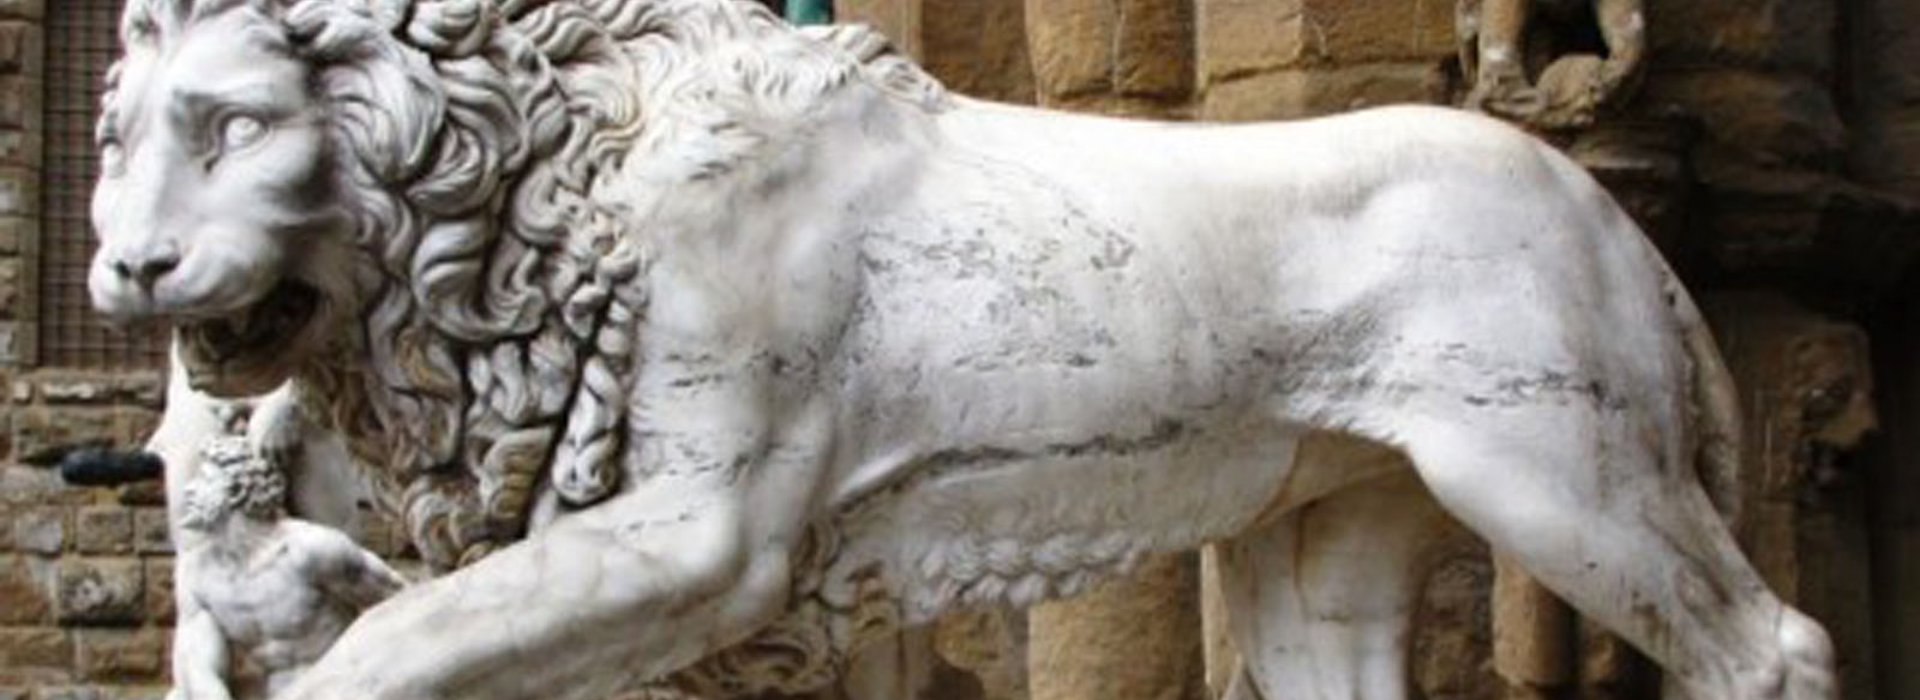 Statua del Marzocco, il leone simbolo di Firenze tour insolito dedicato agli animali simbolo della città